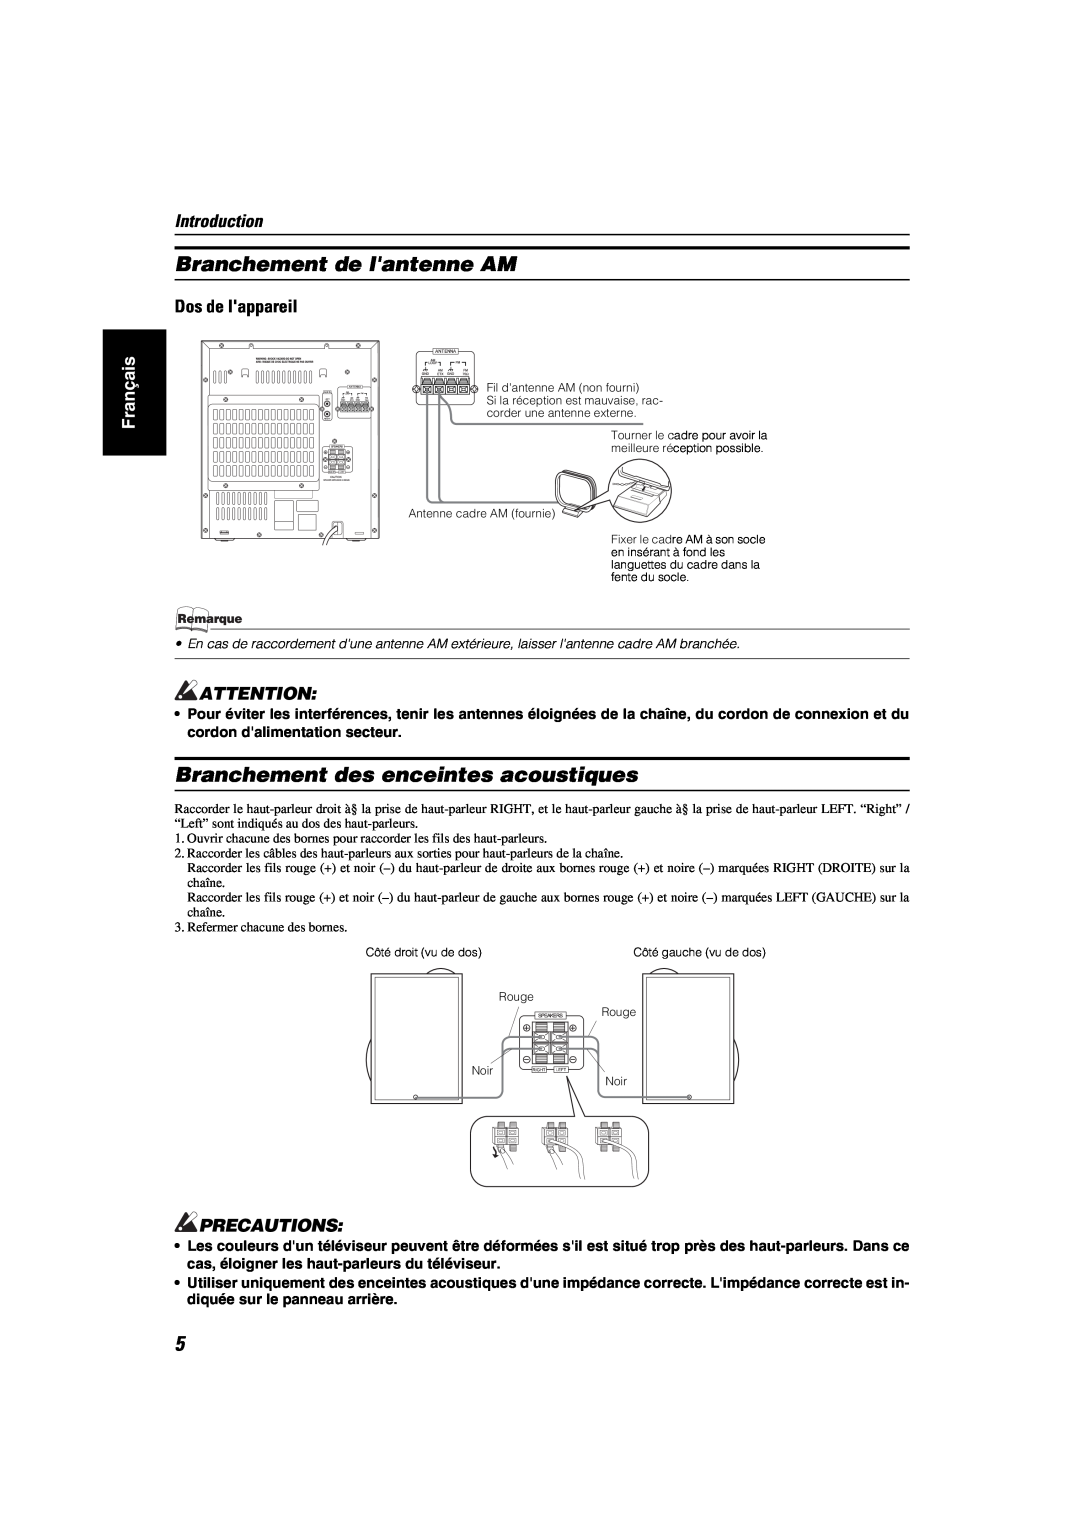 JVC MX-KA6 Branchement de lantenne AM, Branchement des enceintes acoustiques, Introduction, Dos de lappareil, Français 